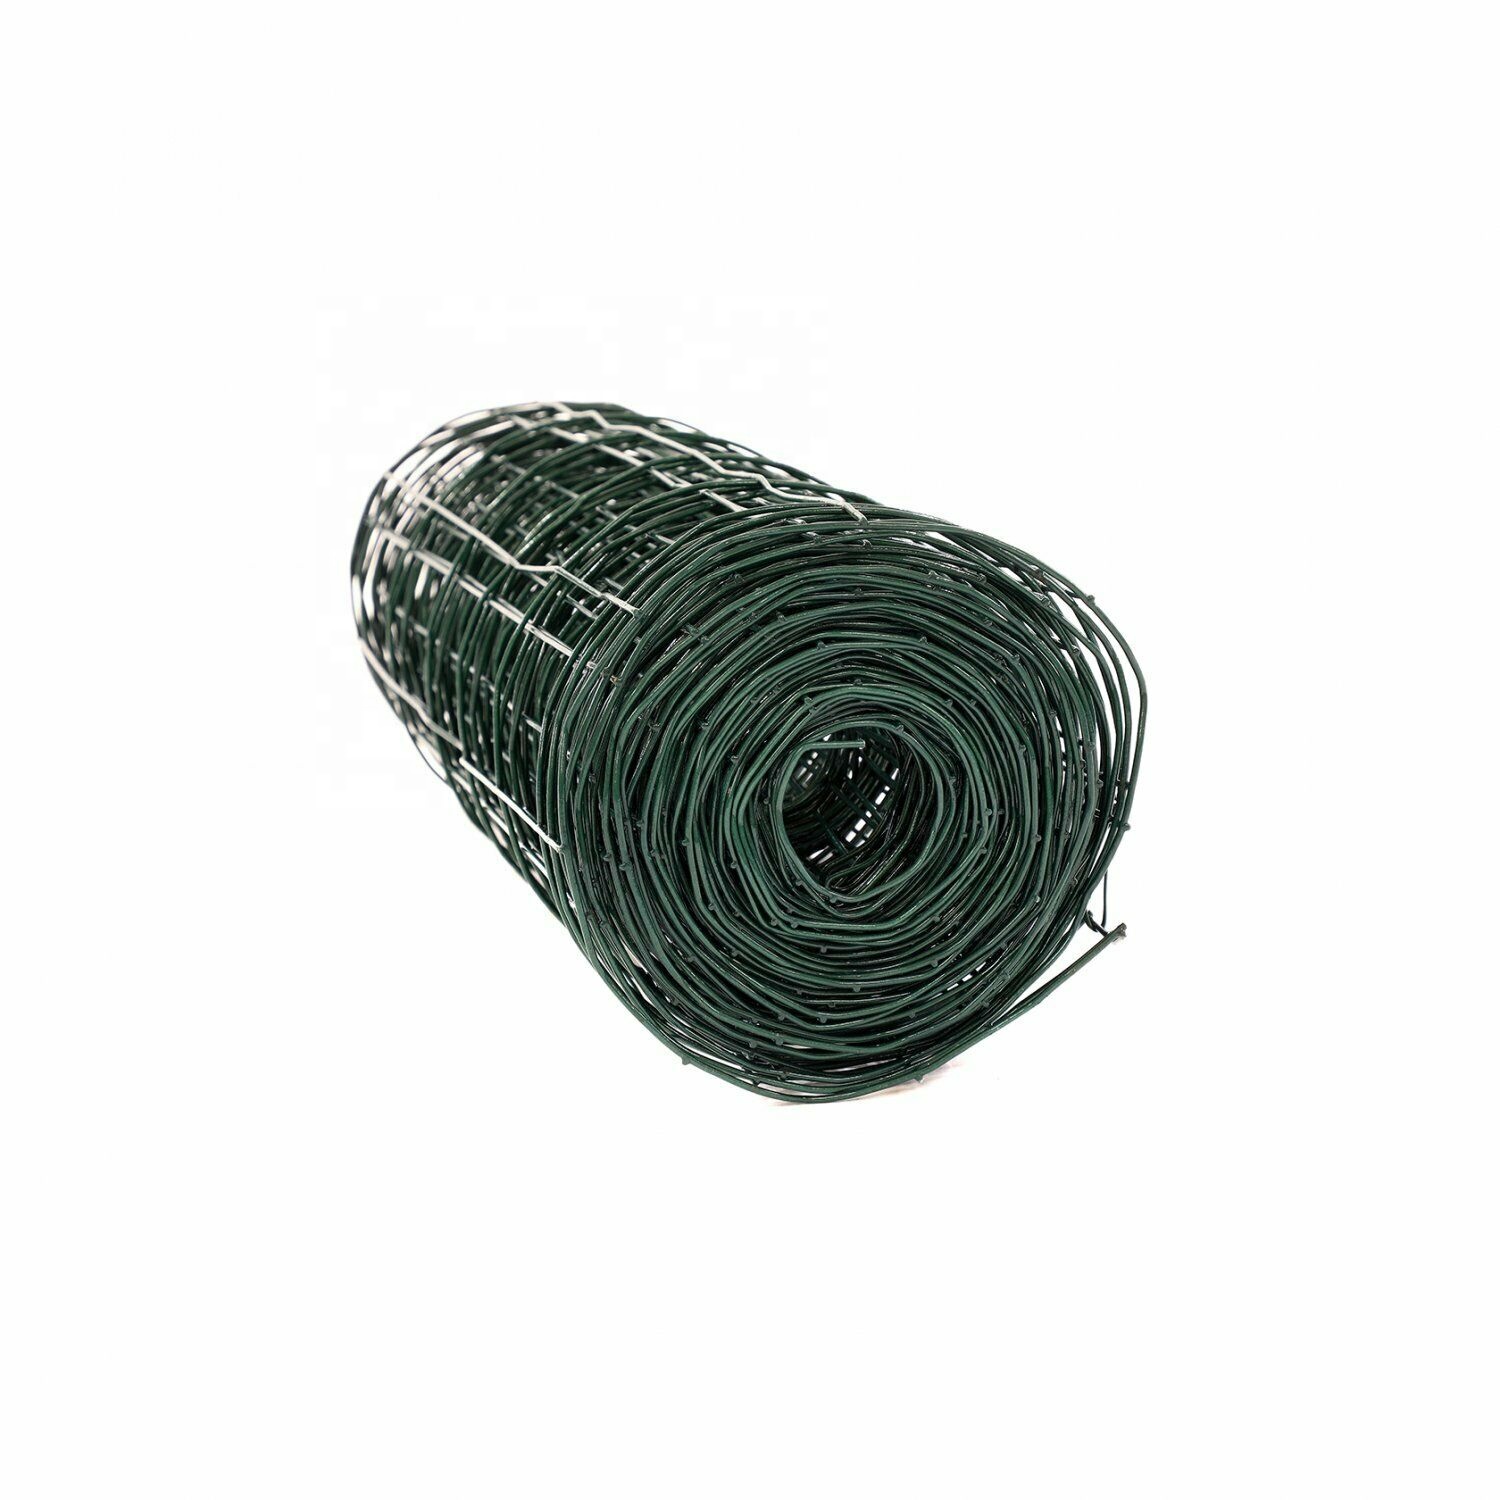 Rede de arame de aço galvanizado revestida de PVC verde Cerca Euro para jardim